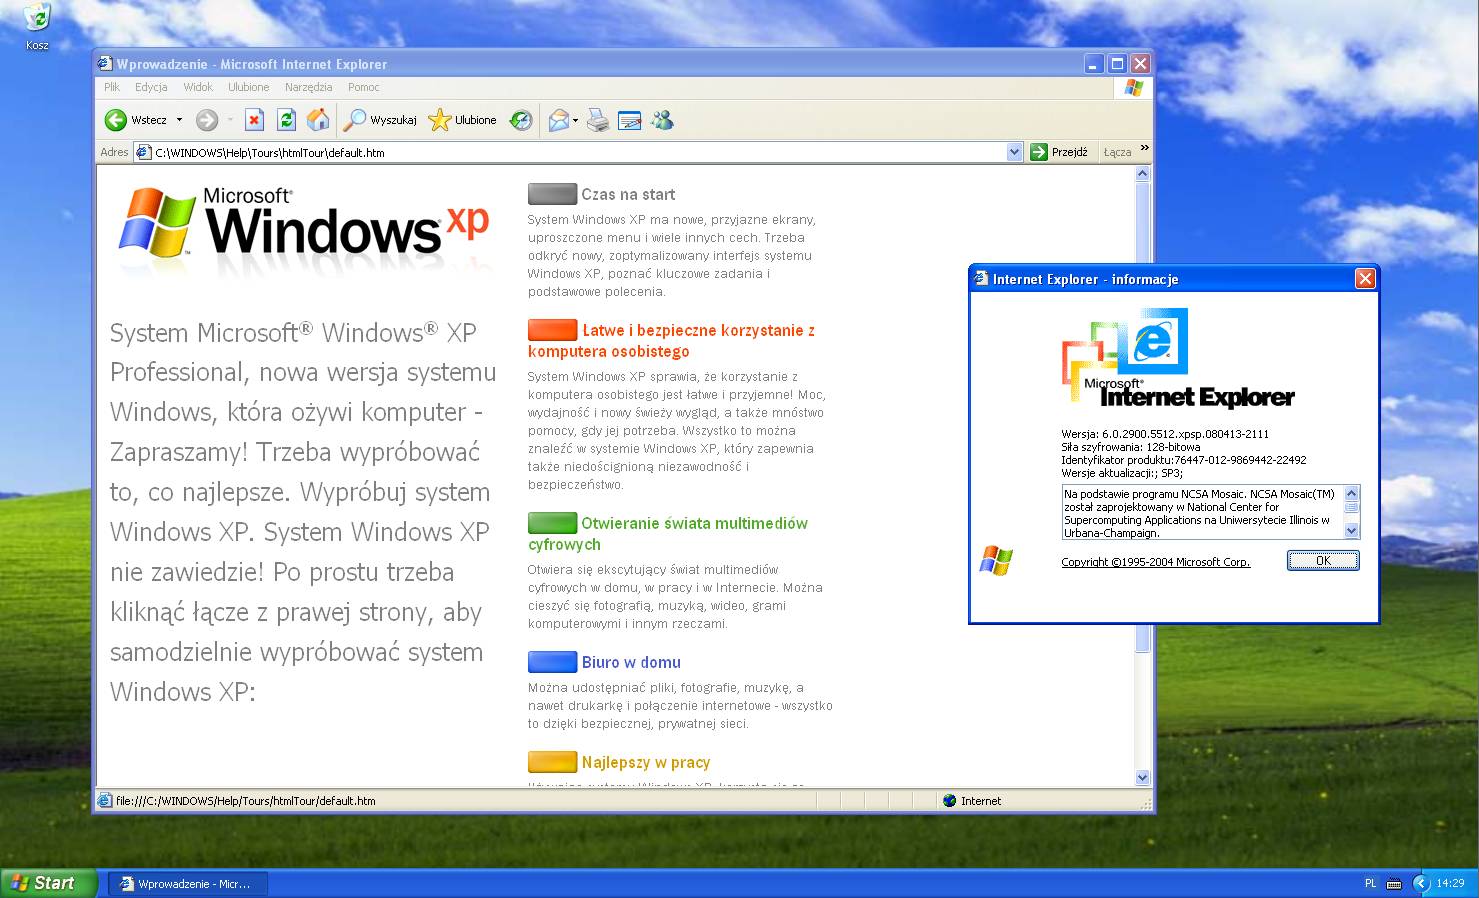 Okno powitalne samouczka systemu Windows XP, otwarty w oknie przeglądarki Internet Explorer 6.